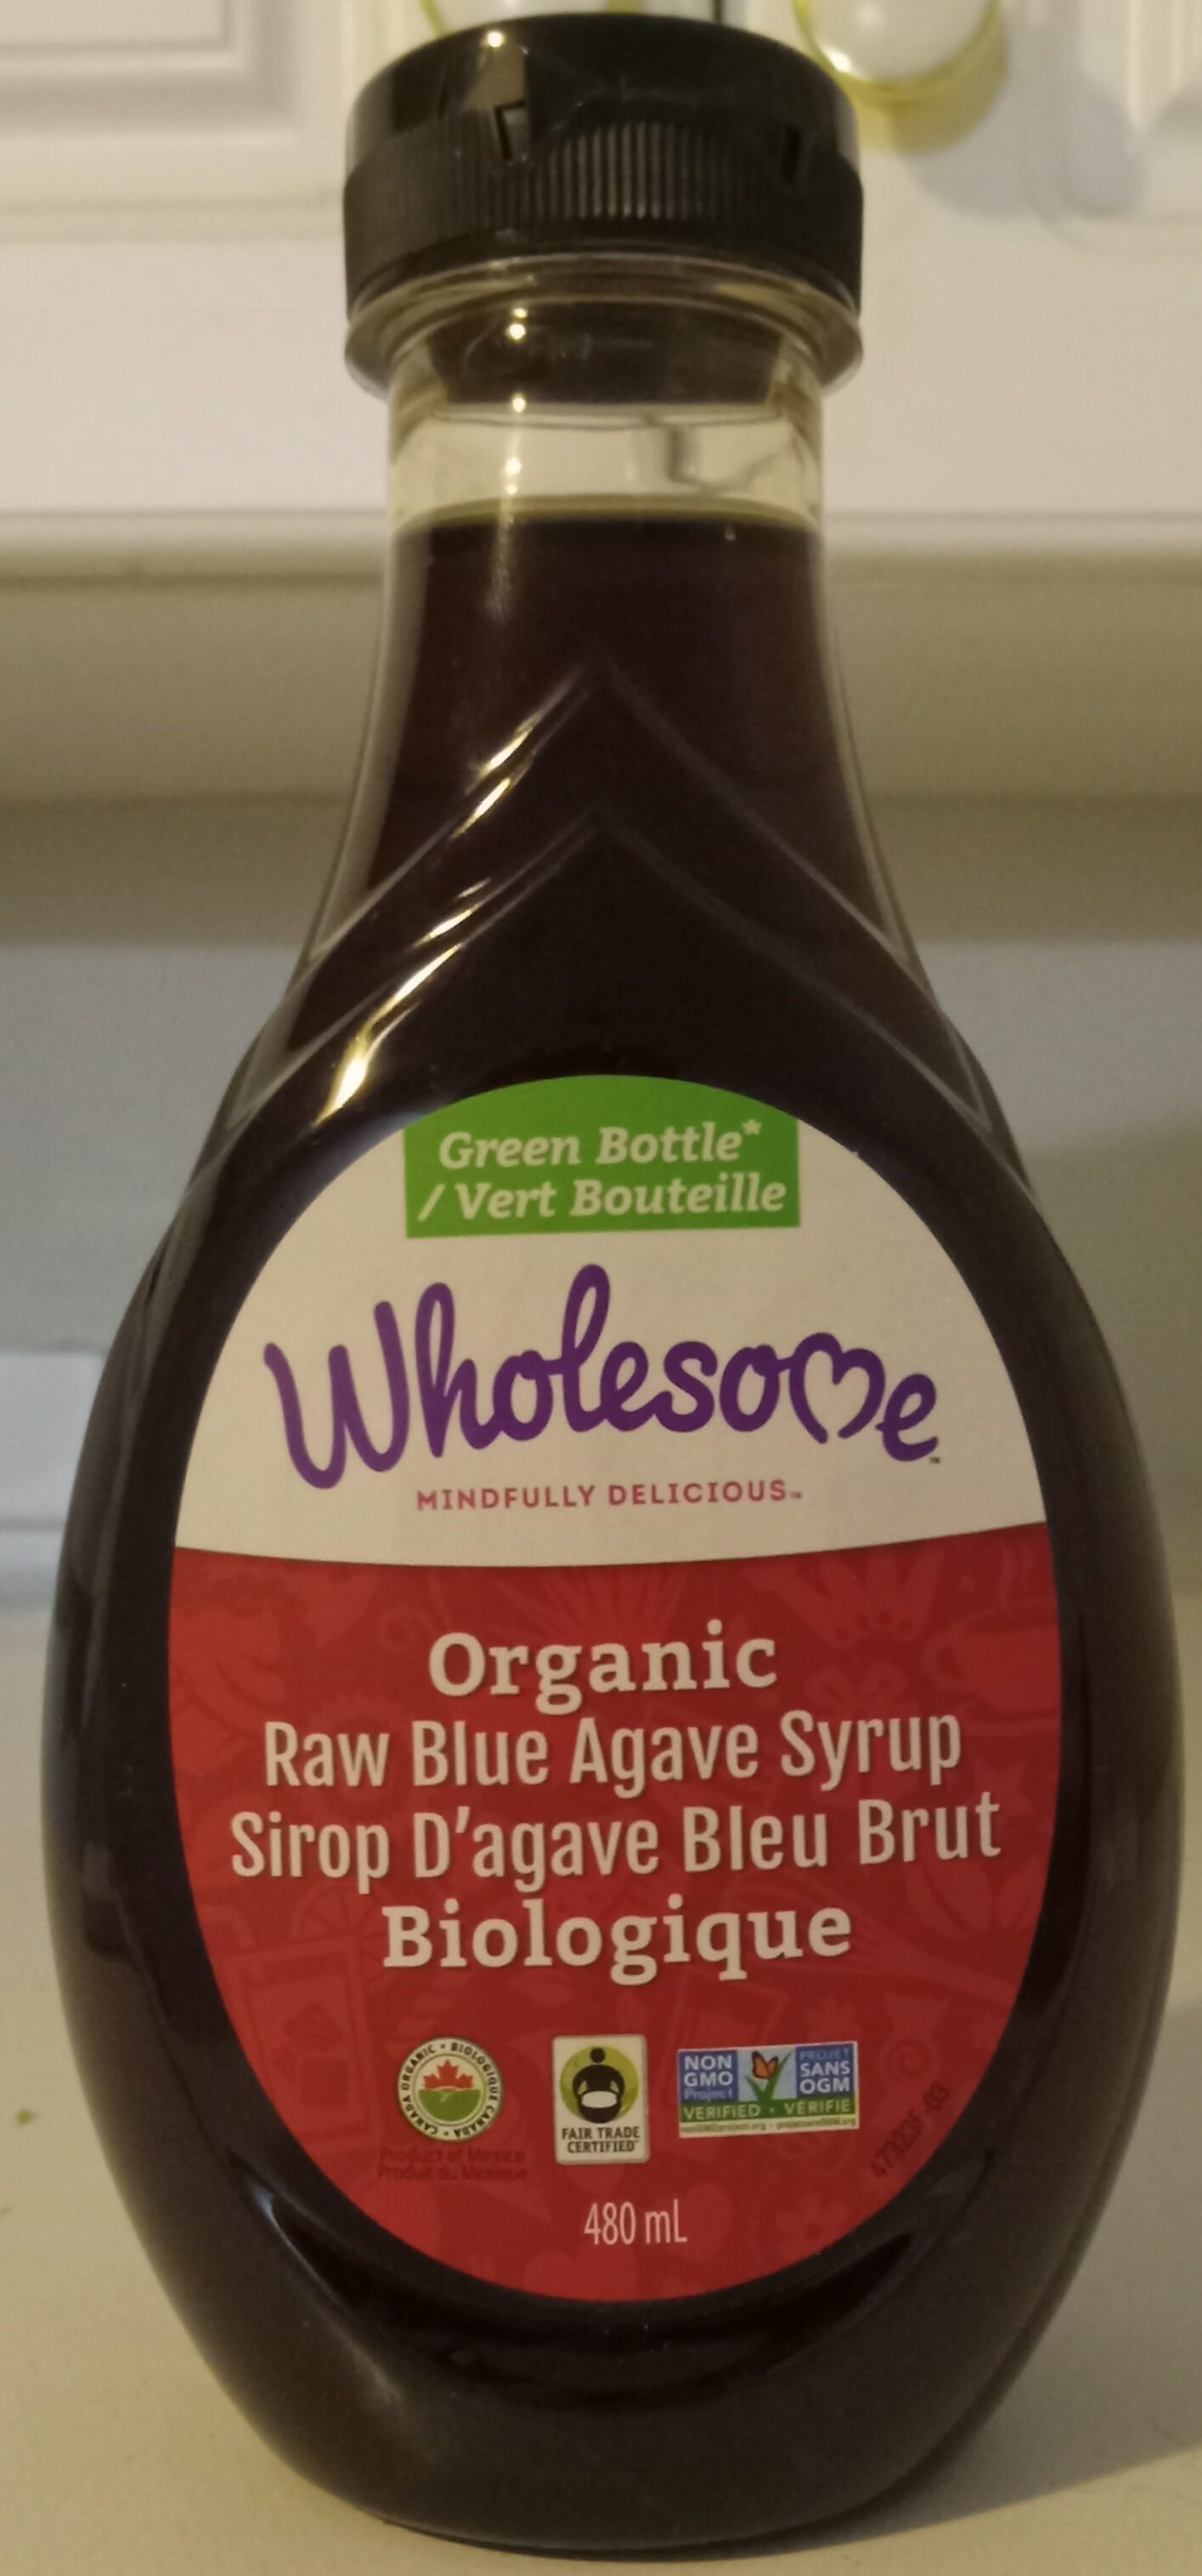 Organic Raw Blue Agave Syrup - Produit - en